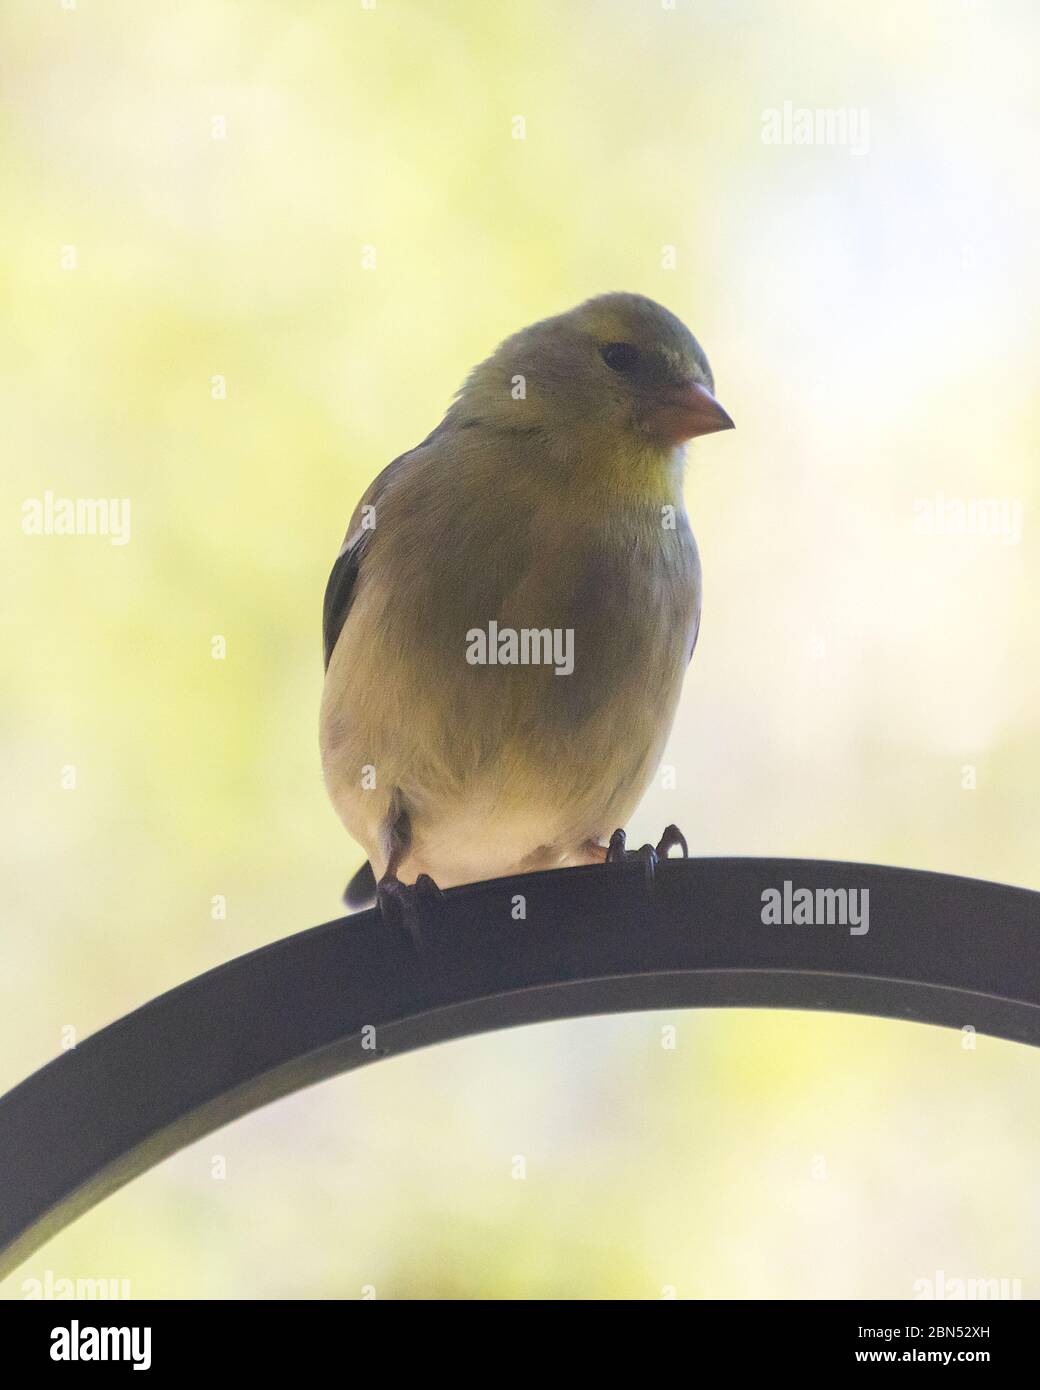 Eine Nahaufnahme eines weiblichen Goldfinken auf einem Metallhaken. Vogel schaut auf Kamera. Hintergrund verschwommen. Stockfoto